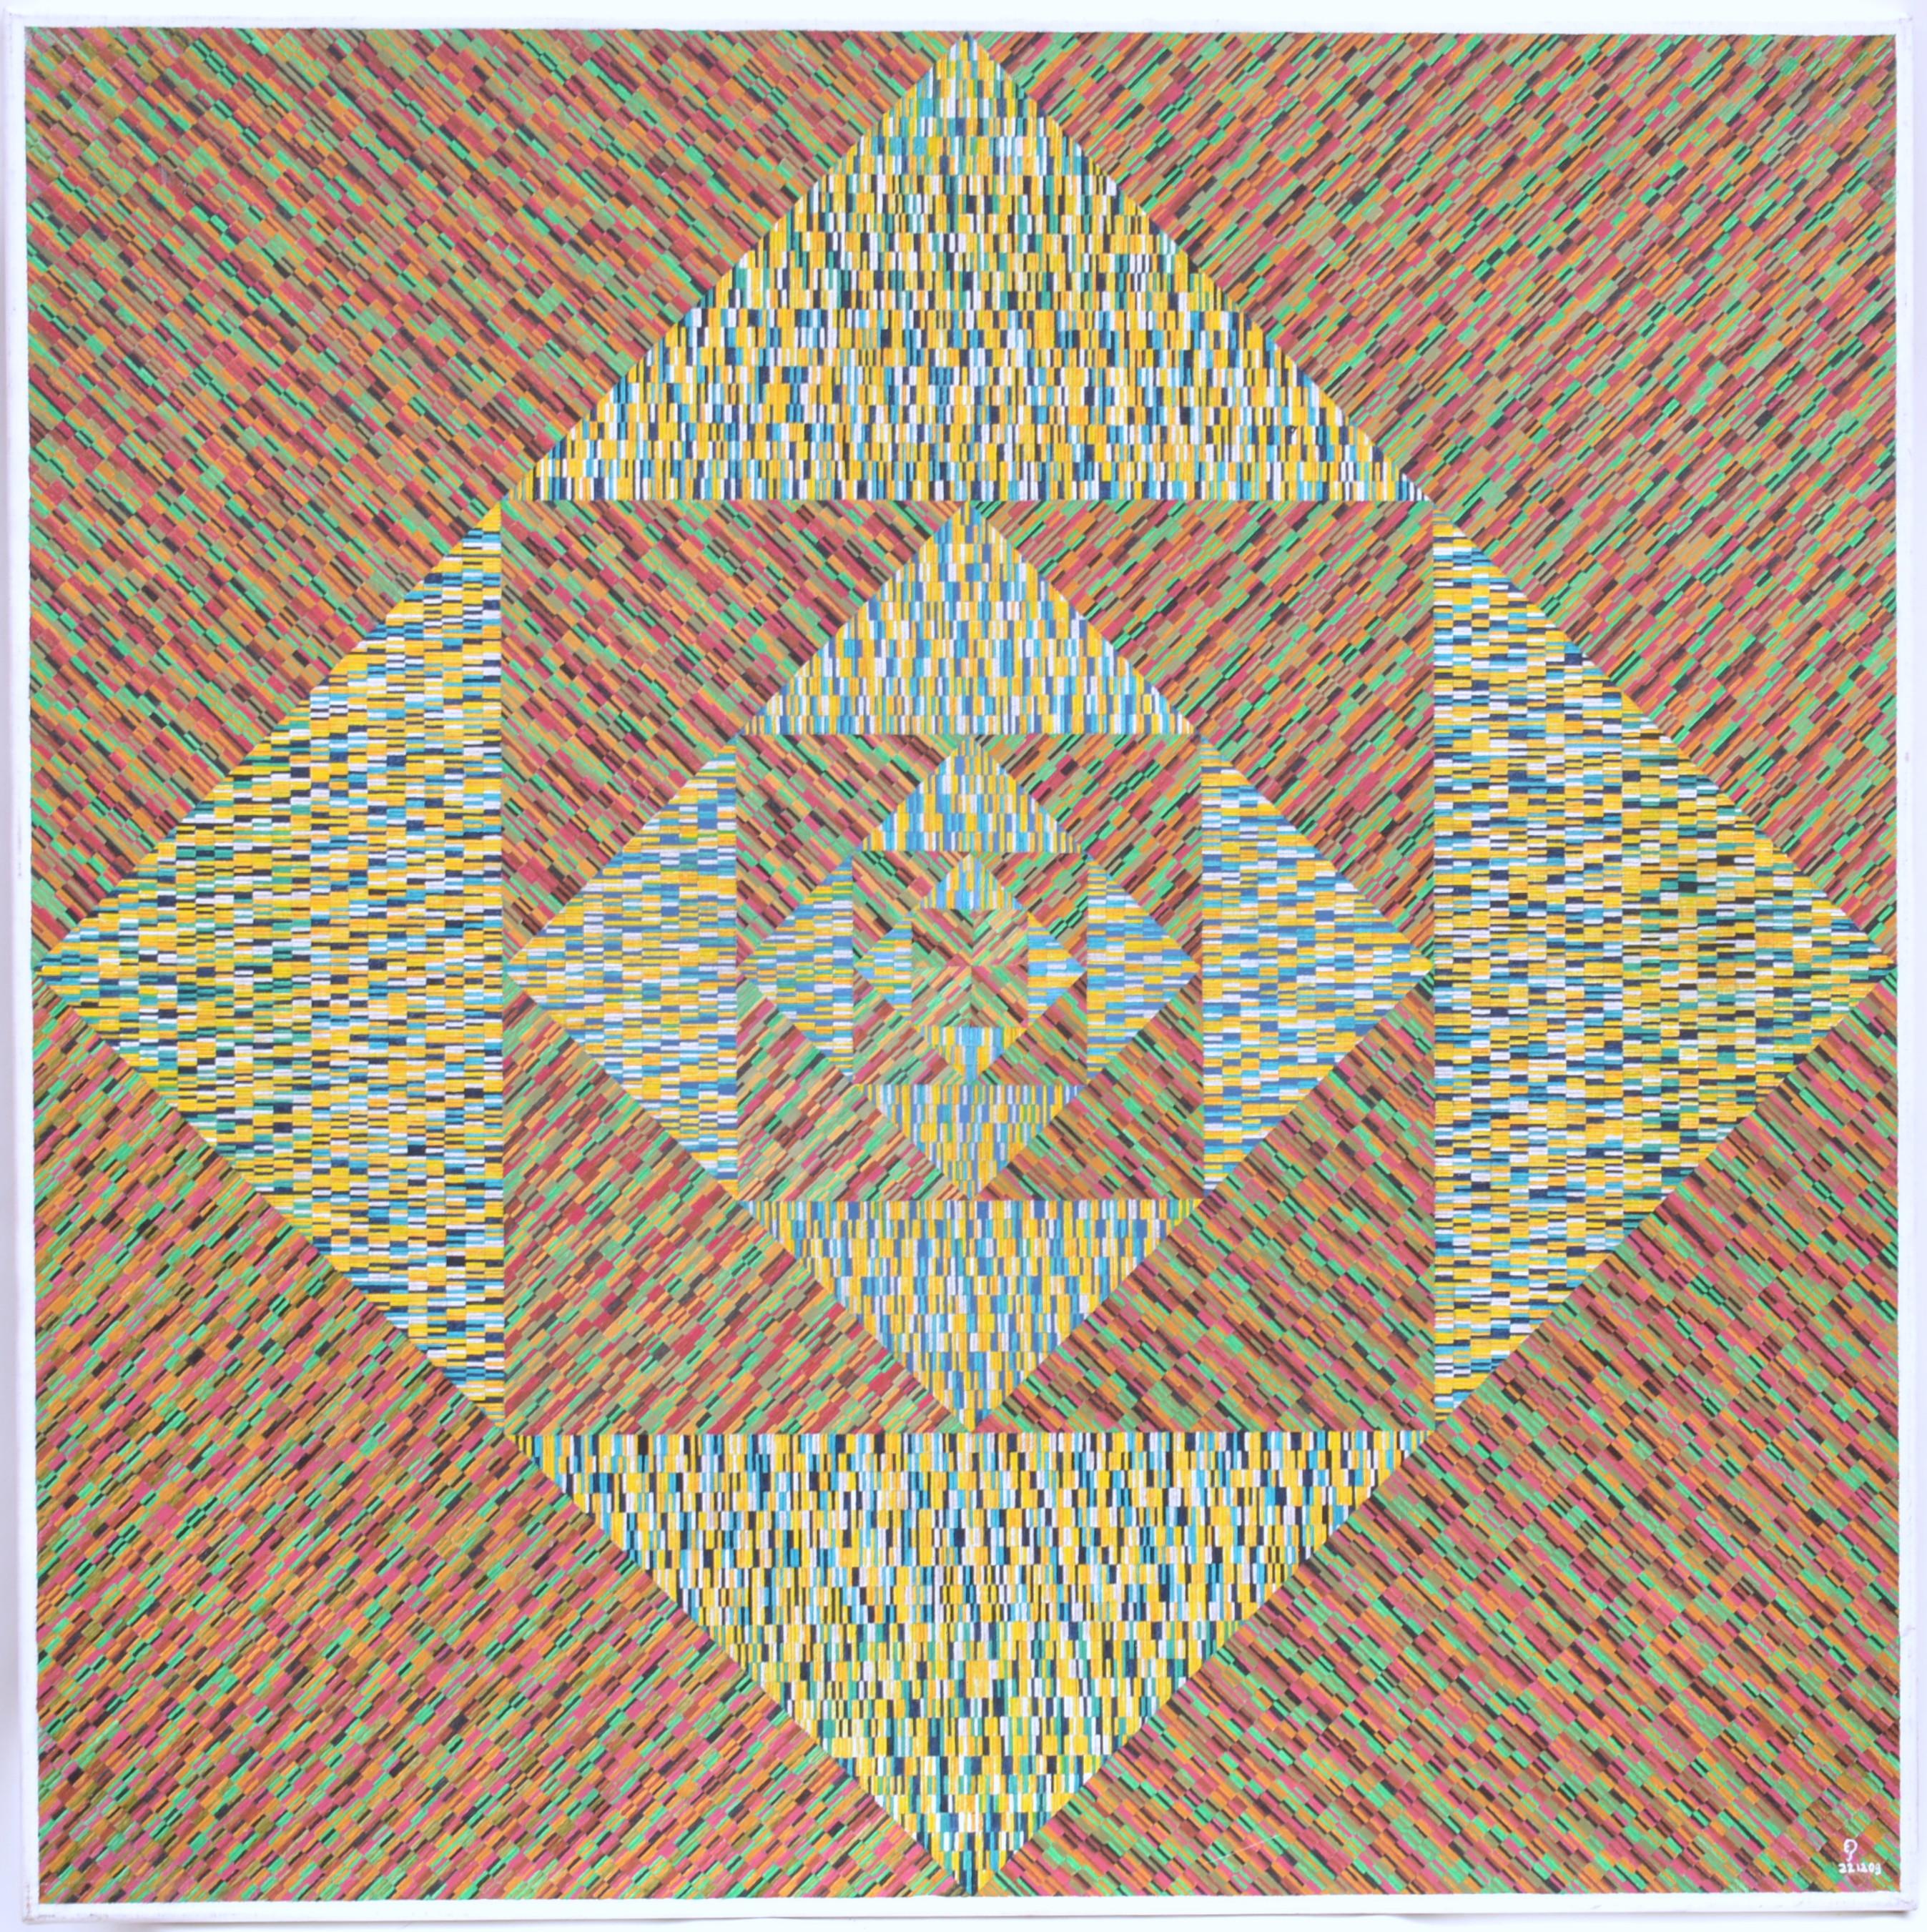 Dynamisches geometrisches abstraktes Gemälde auf Leinwand des niederländischen Künstlers Eric Pool 2009 mit dem Titel 'T.H.E. Typical Heroic Exclusive'. Das geometrische Muster ist wie ein Quilt oder ein Flickenteppich aus raffinierten Mustern, die